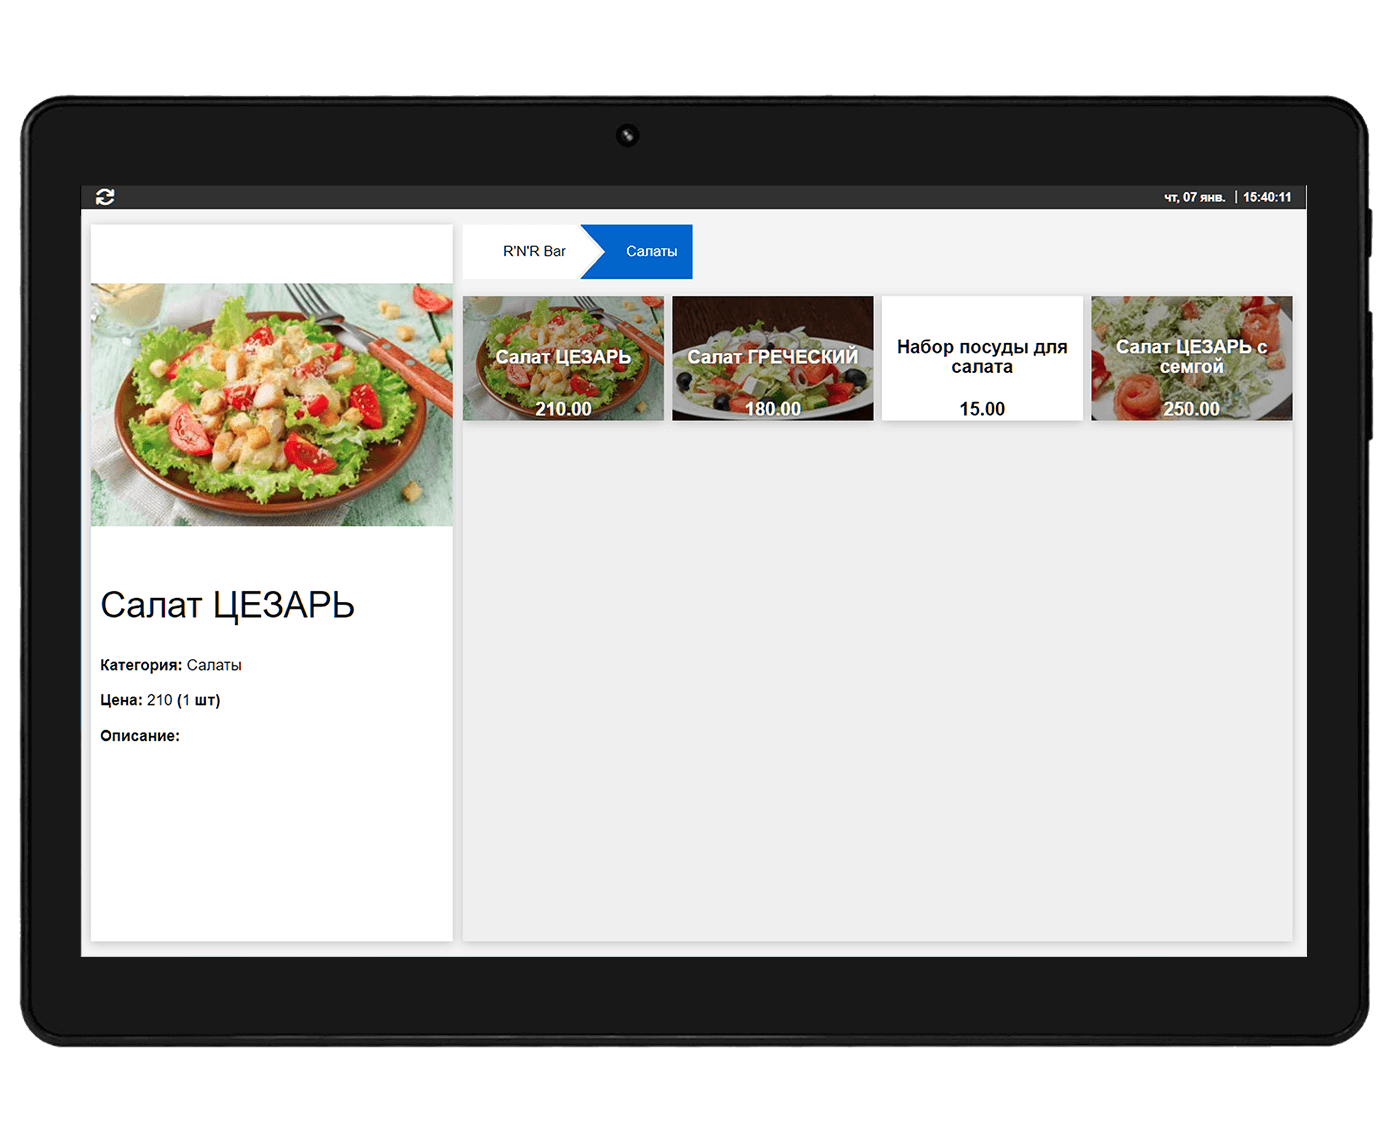 Внешний вид страницы в электронном меню для посетителей